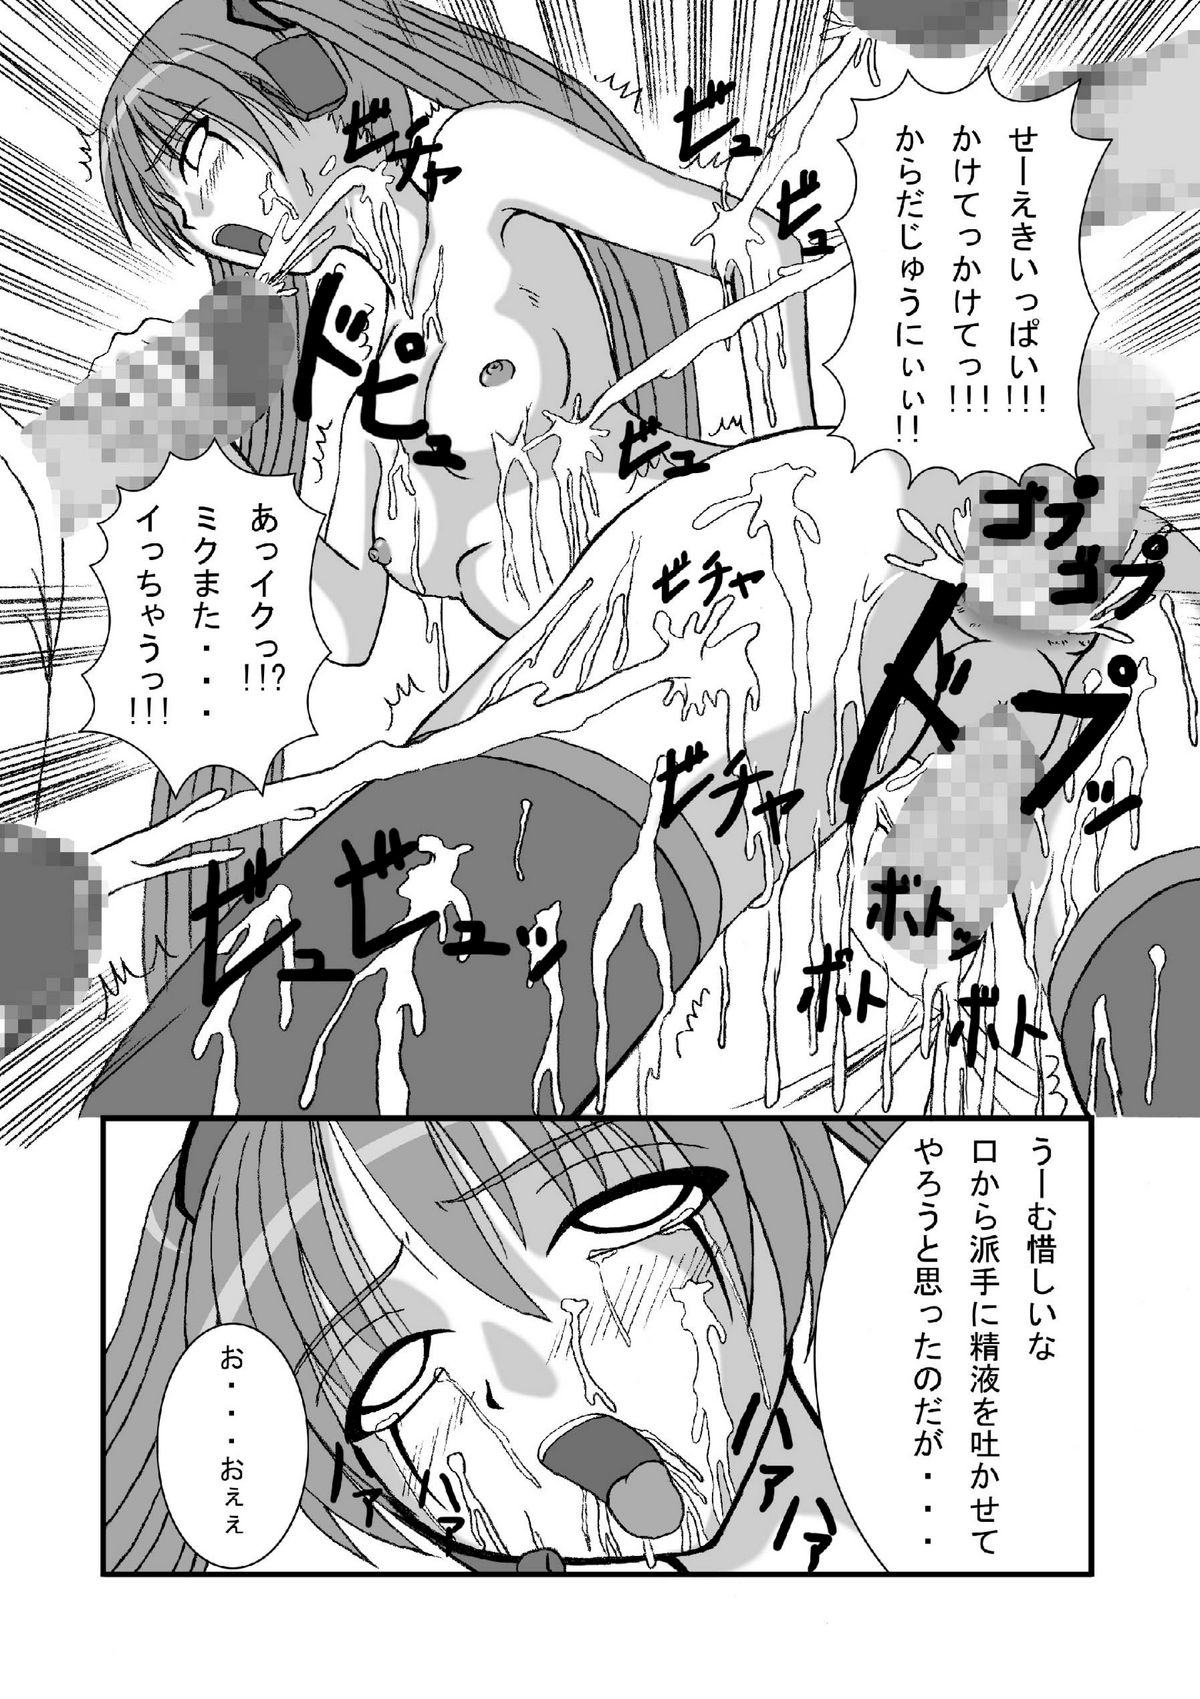 [Pintsize] Hatune Miku ni Krauser-san no Deathpenis wo (Vocaloid) [ぱいんとさいず] 初●ミクにクラウザーさんのデスペニスをぶちぶち込めー(ボーカロイド)